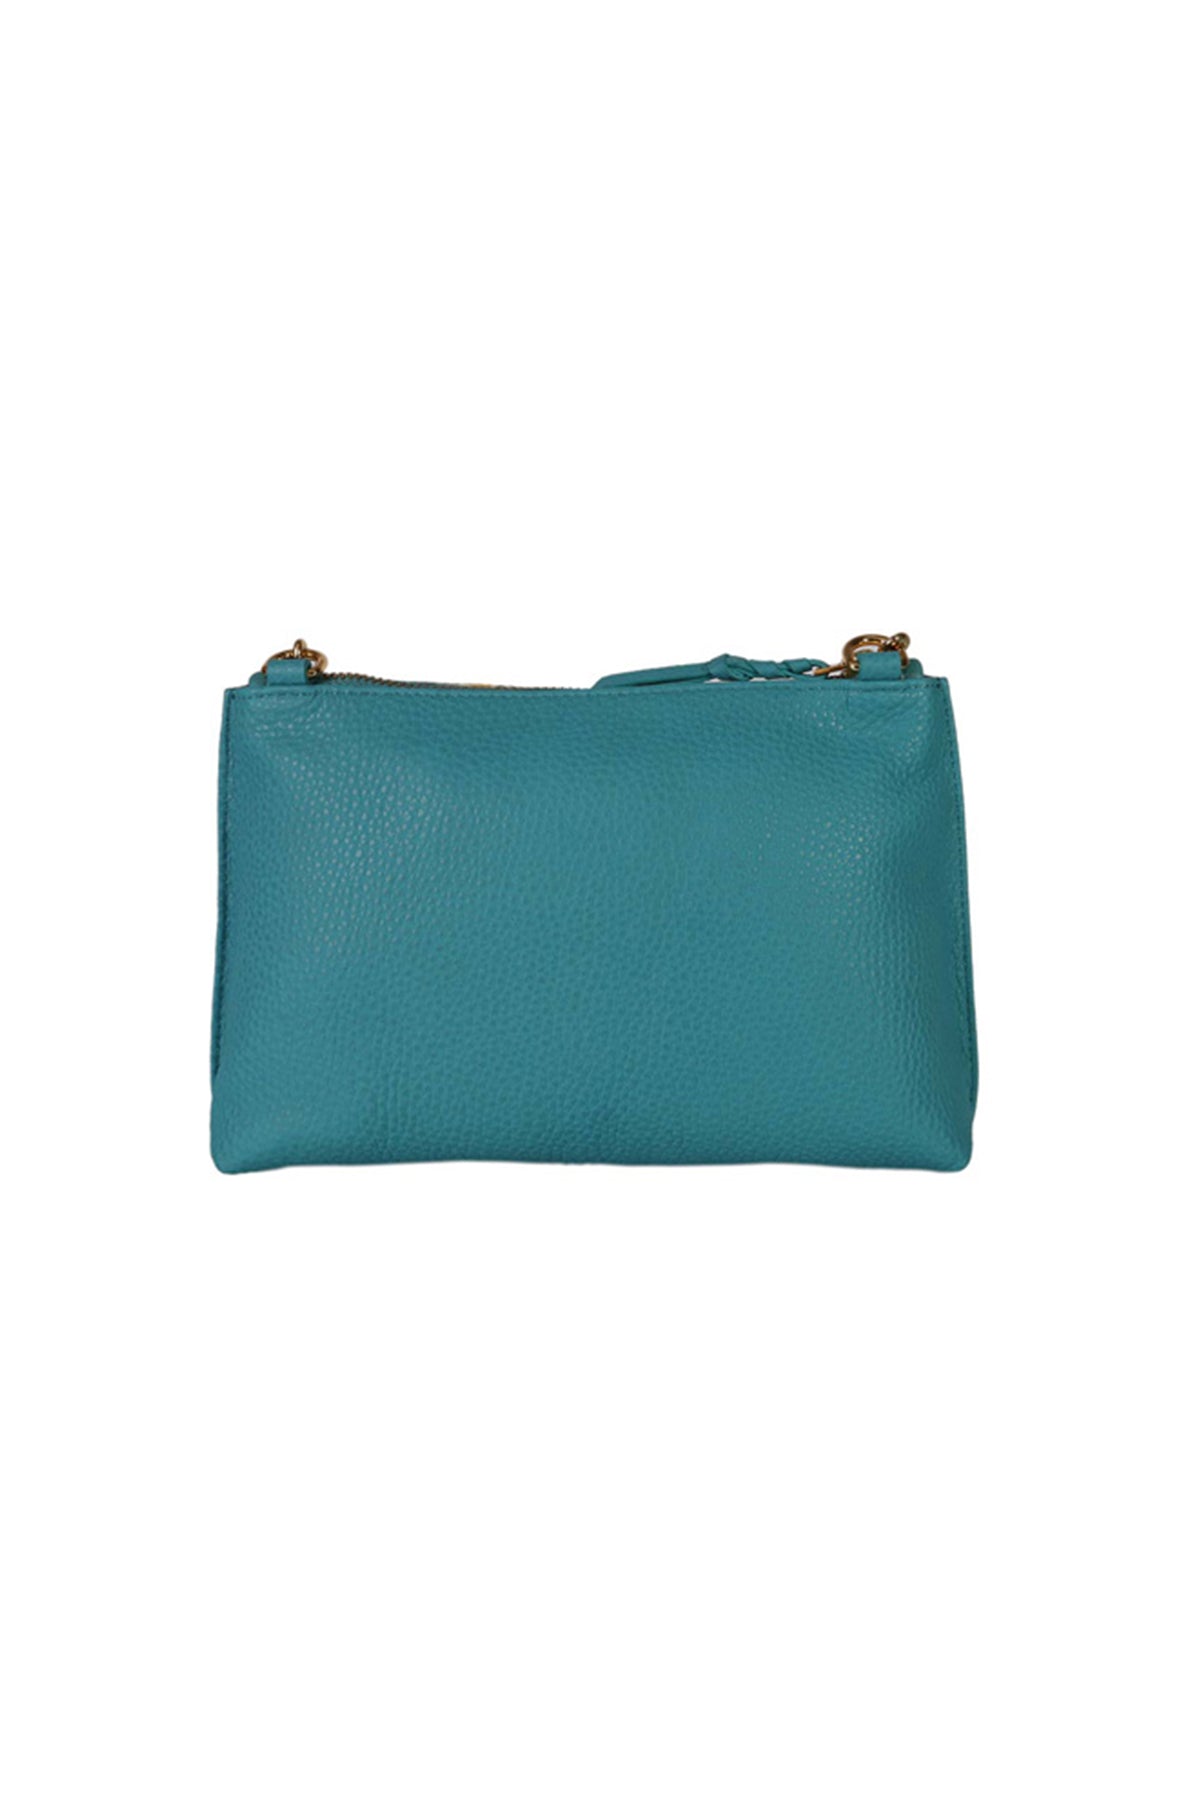 Carnation Turquoise Printed Leather Shoulder Bag